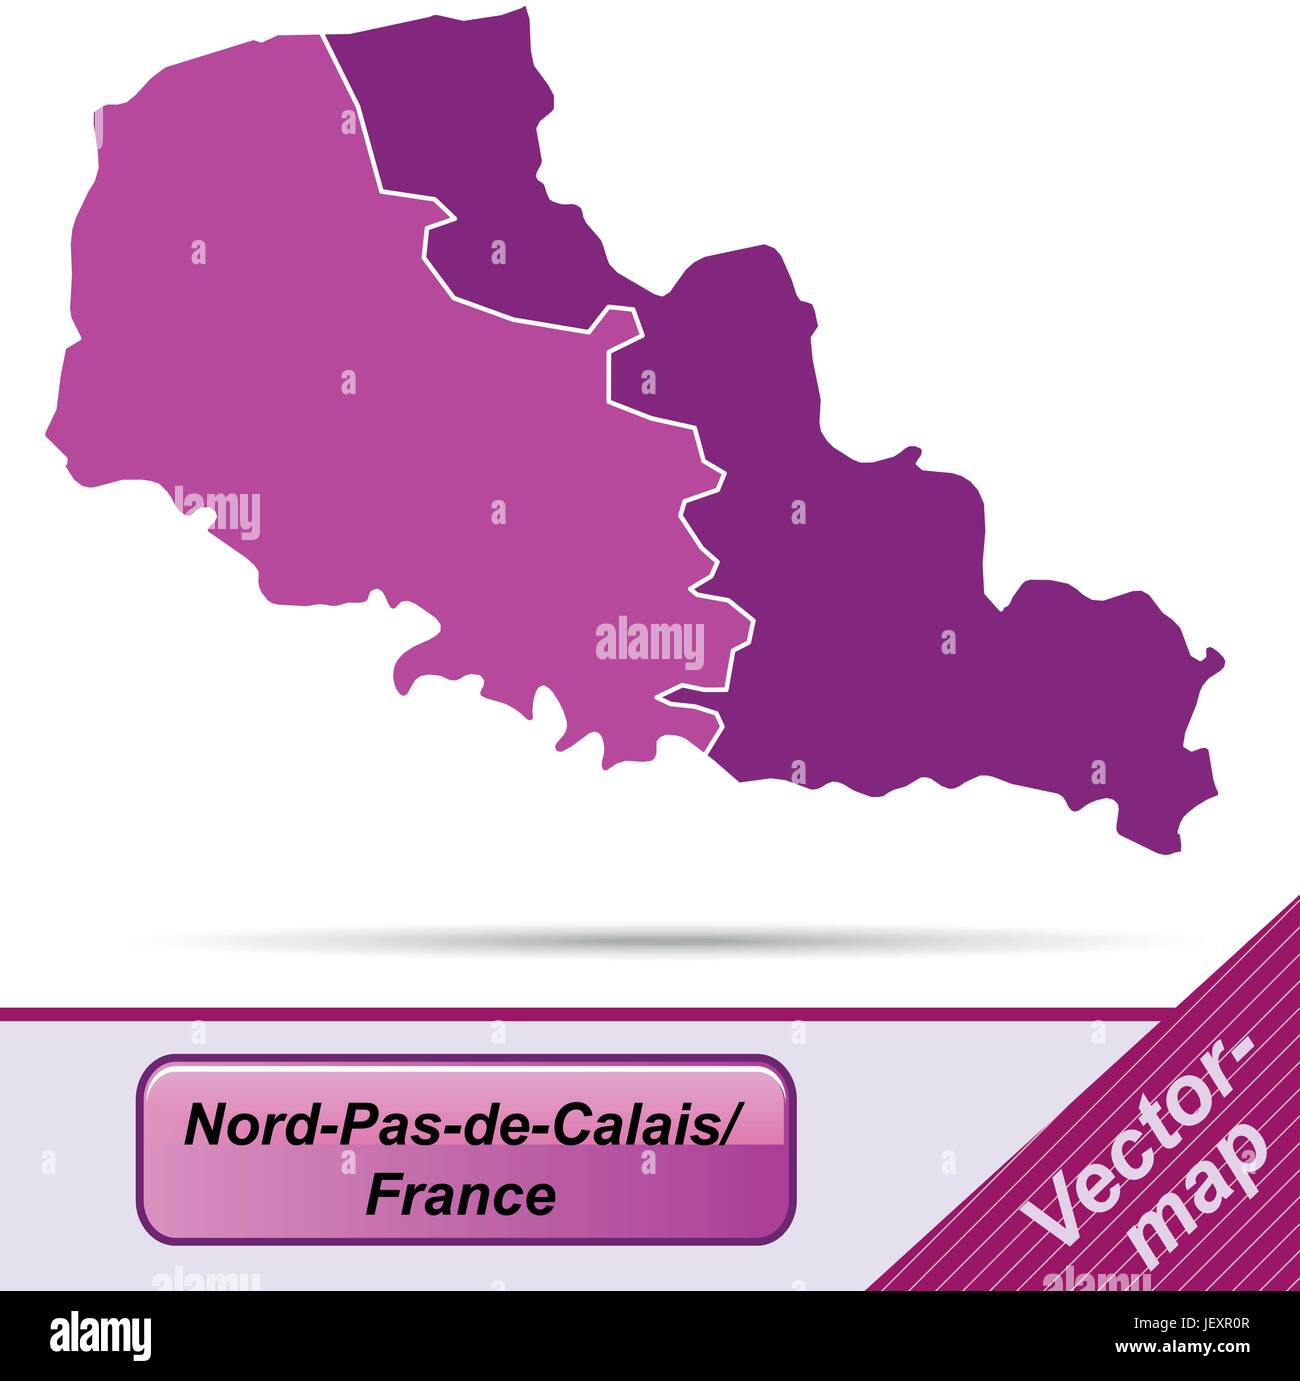 Mappa di Nord-Pas-de-Calais con bordi in viola Immagine e Vettoriale ...